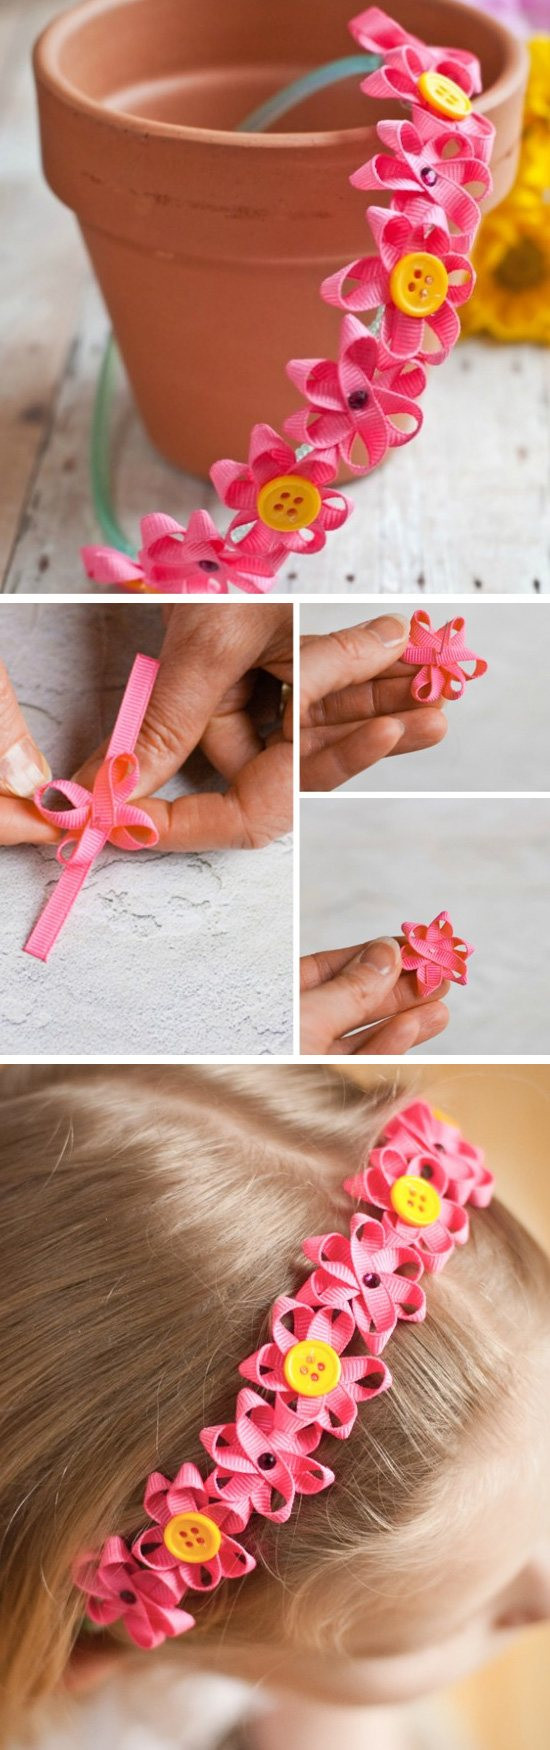 Craft Project For Toddler
 30 Creative DIY Spring Crafts for Kids Sponge Kids